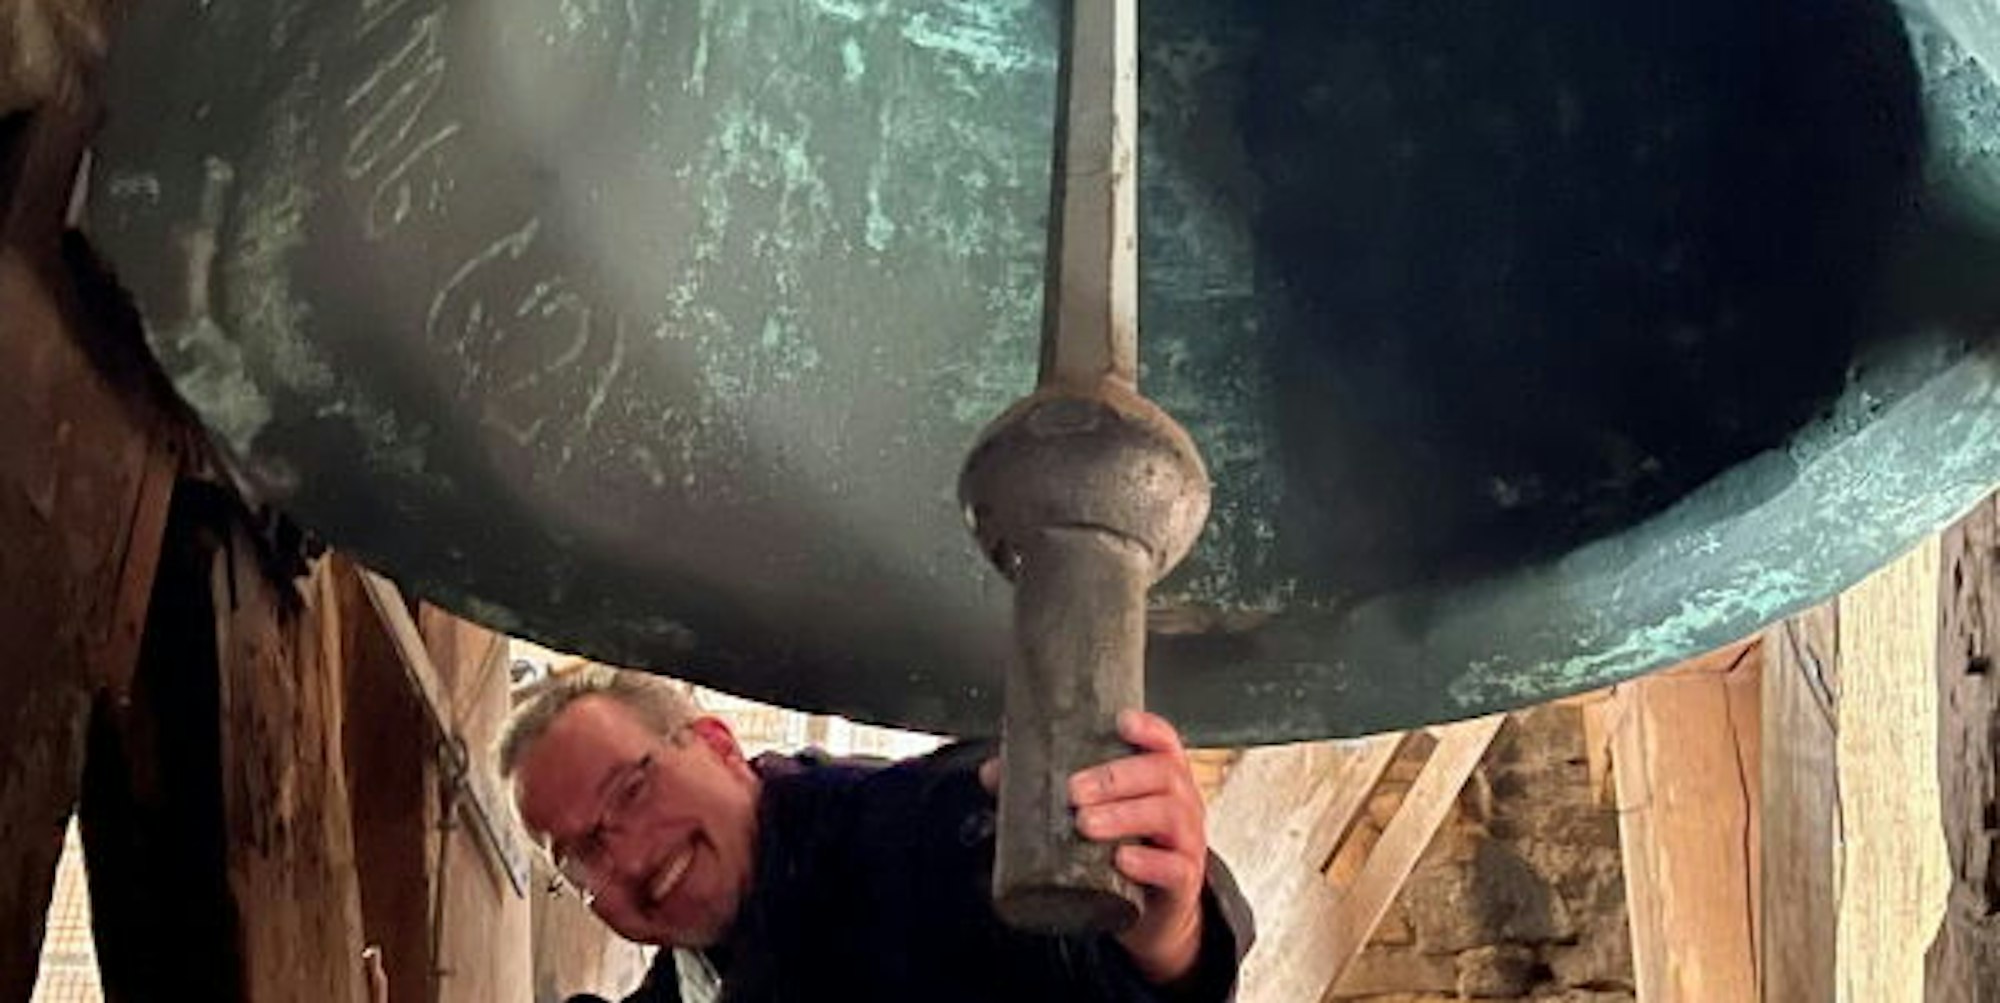 Auch wenn er sich redlich bemüht: Mit der Hand kann Küster Bernd Franke den schweren Klöppel nicht genug bewegen, dass er auf die Wand der riesigen Patricius-Glocke schlägt.